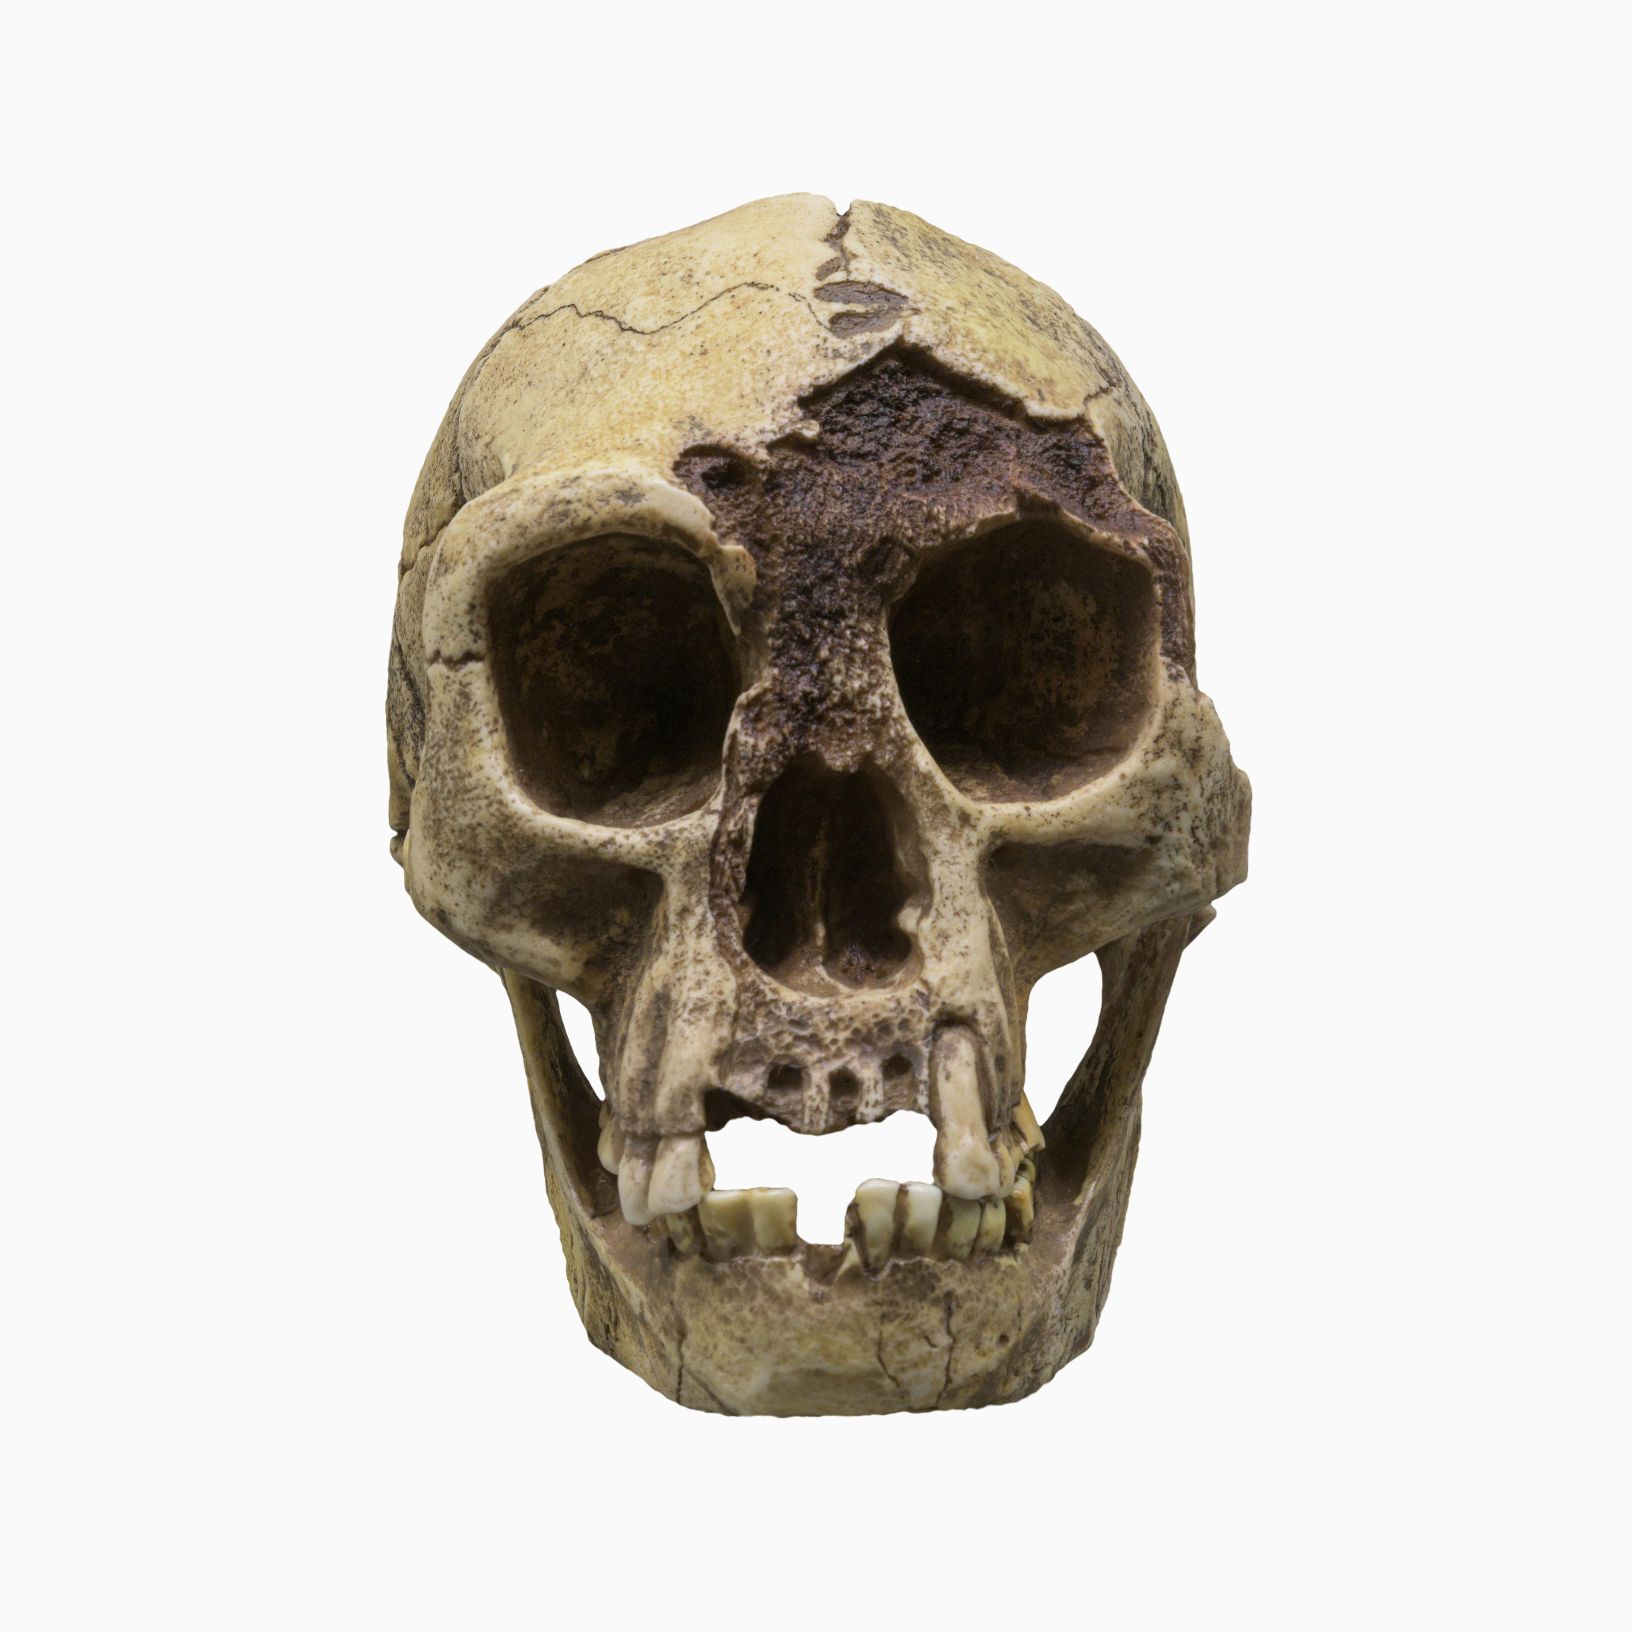 H. floresiensis (フローレスマン) の頭骨は、「ホビット」の愛称で呼ばれ、インドネシアのフローレス島に生息していた古代の小さな人間の種です。 © 画像クレジット: ドミトリー・モロズ | DreamsTime.com からライセンス供与 (エディトリアル/商用利用のストックフォト、ID: 227004112)